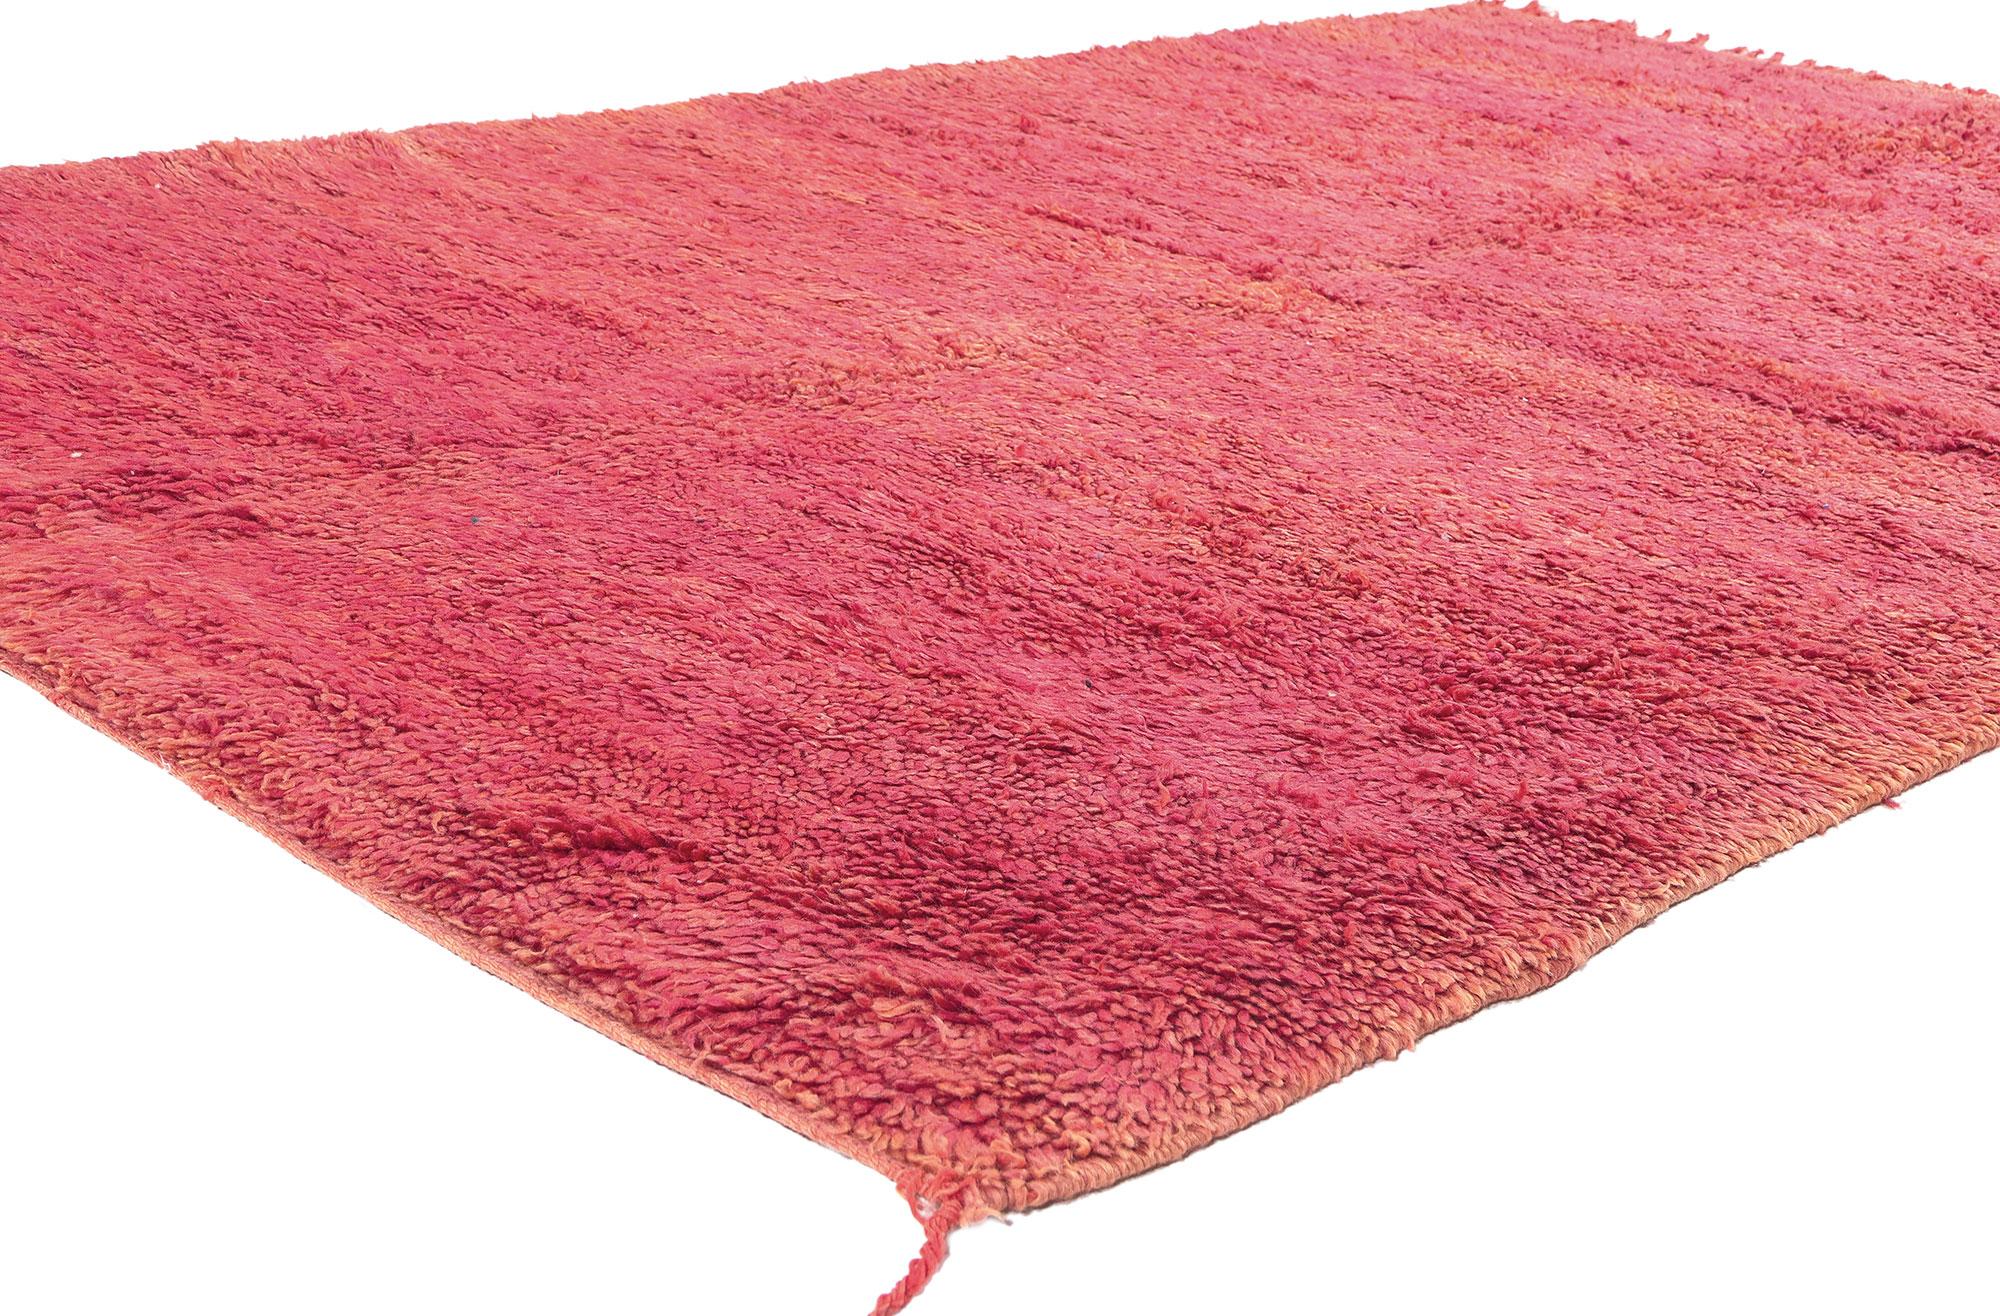 20981, tapis vintage Beni Mrirt avec style Mid-Century Modern, tapis rouge berbère marocain. Ce tapis marocain rouge Beni Mrirt en laine noué à la main est fonctionnel et polyvalent, tout en restant fidèle à l'esprit authentique de la culture de la